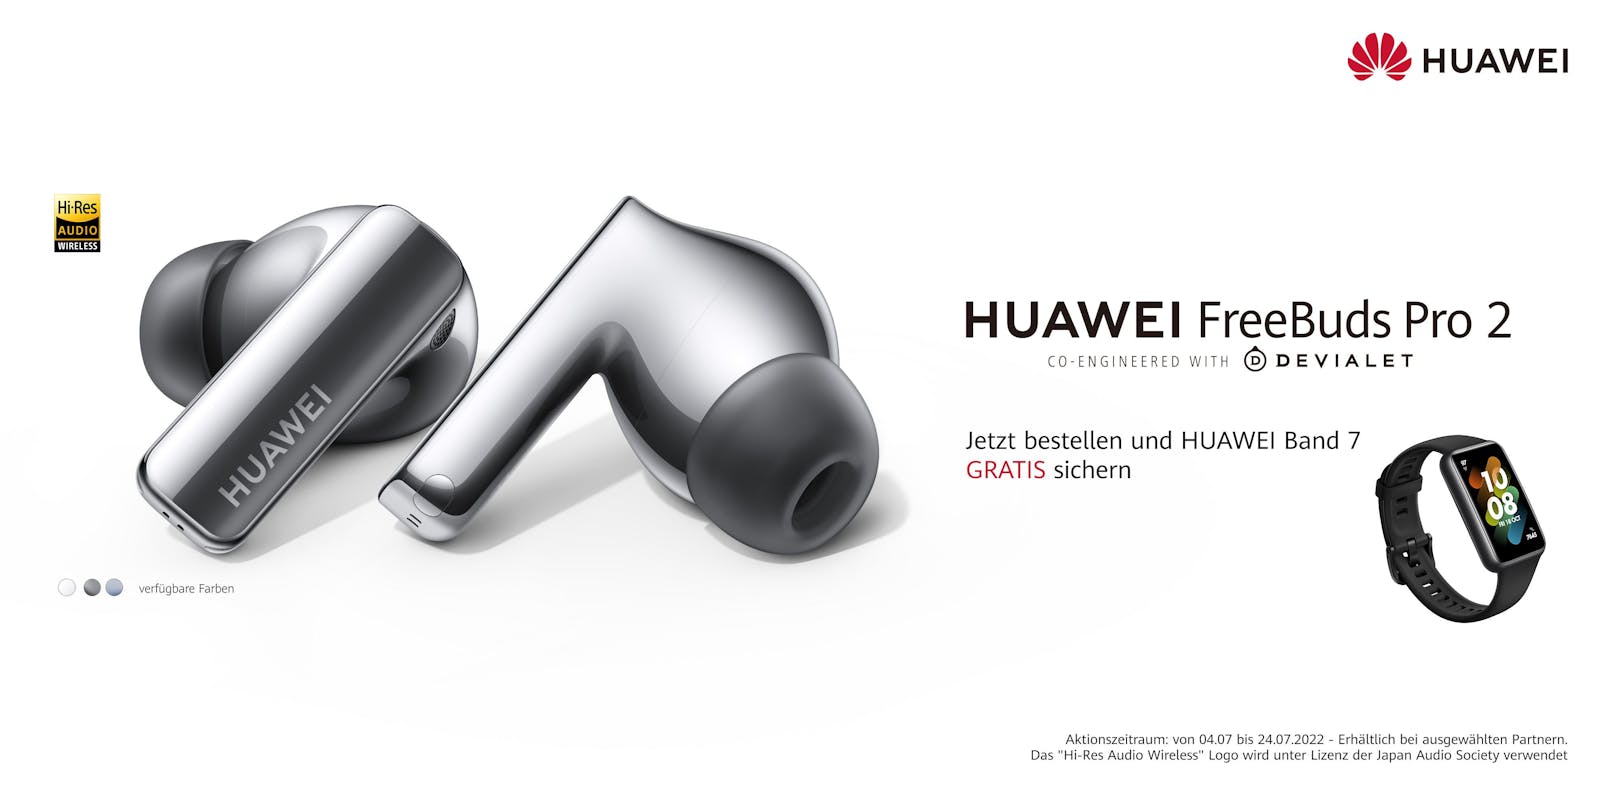 Noch bis 24. Juli bekommst du zu den neuen Huawei FreeBuds Pro 2 das Huawei Band 7 kostenlos dazu!